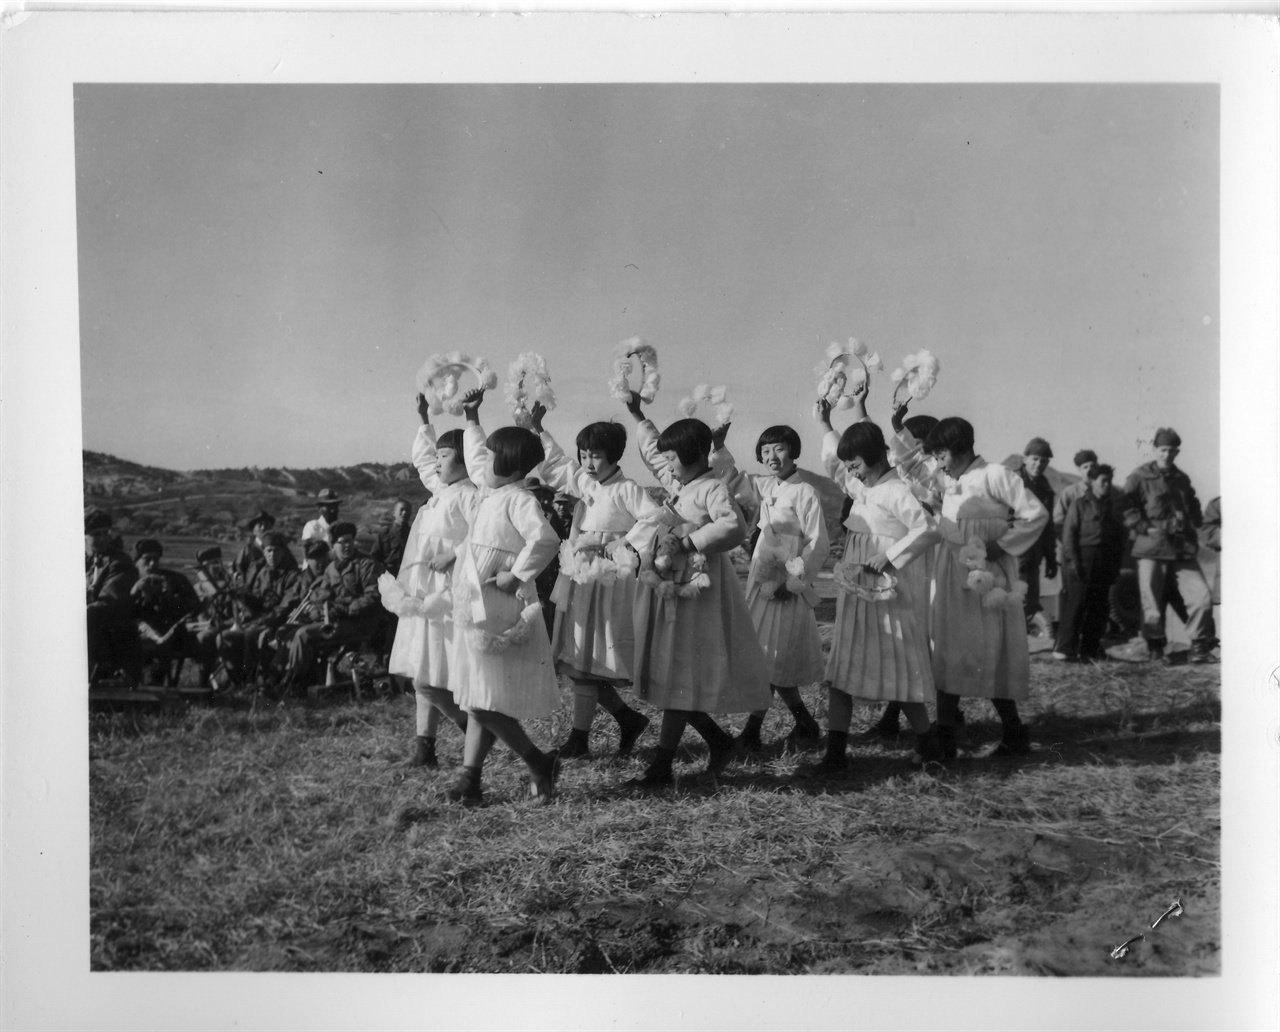 1953. 12. 23. 한국의 소녀들이 미군부대를 방문하여 위문공연을 하고 있다.